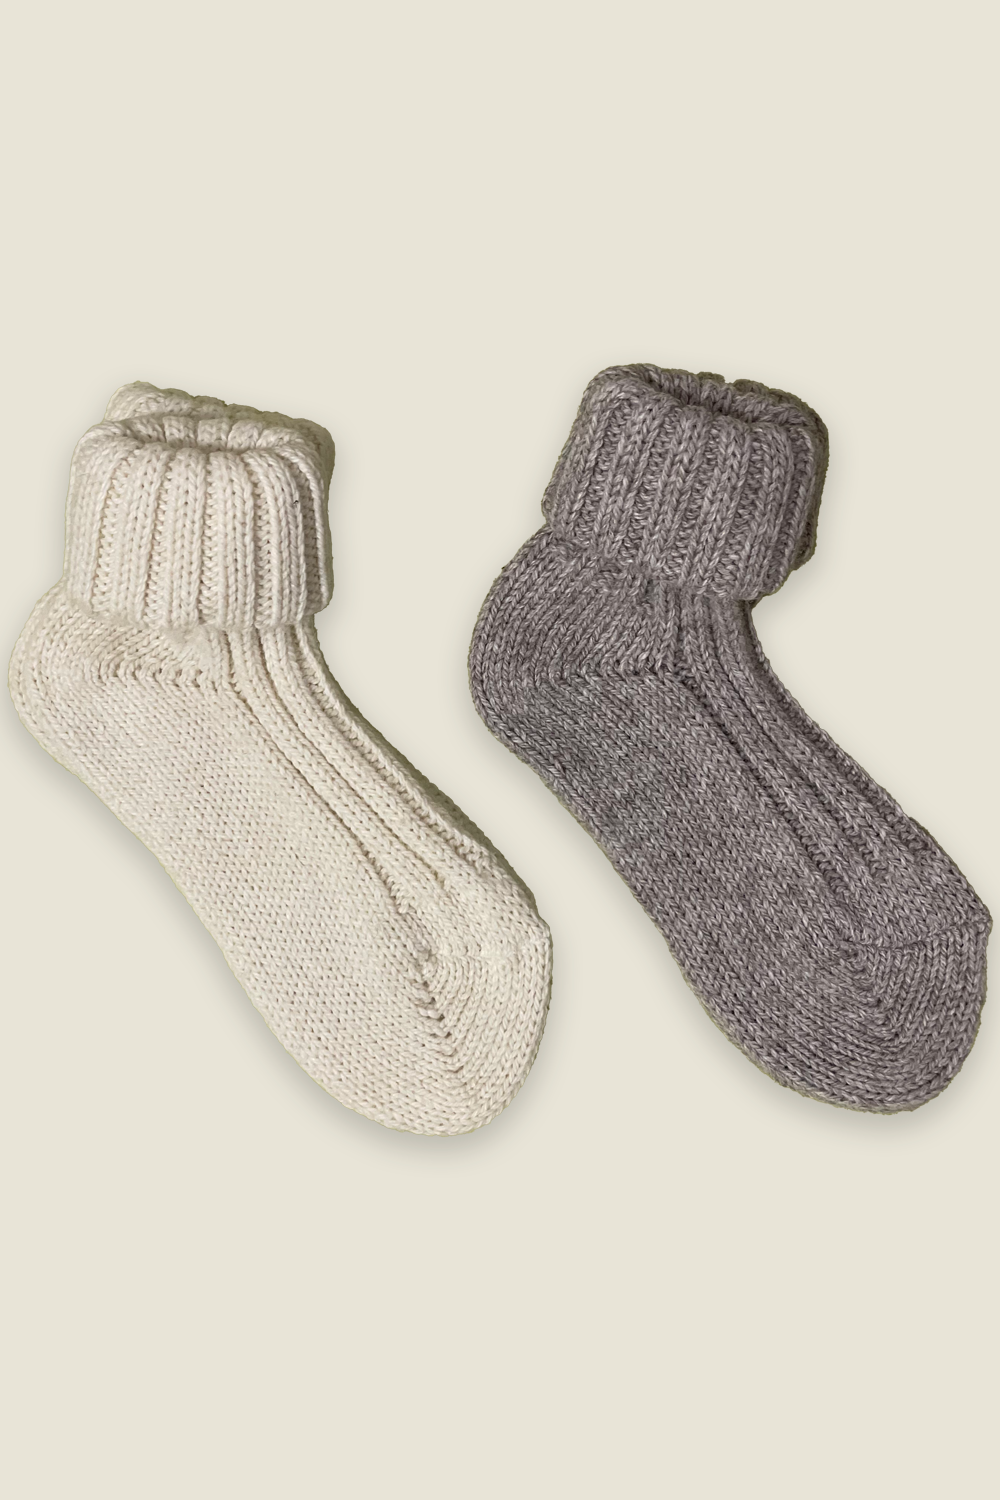 Chaussettes en alpaga - naturelles et grises - 2 paires